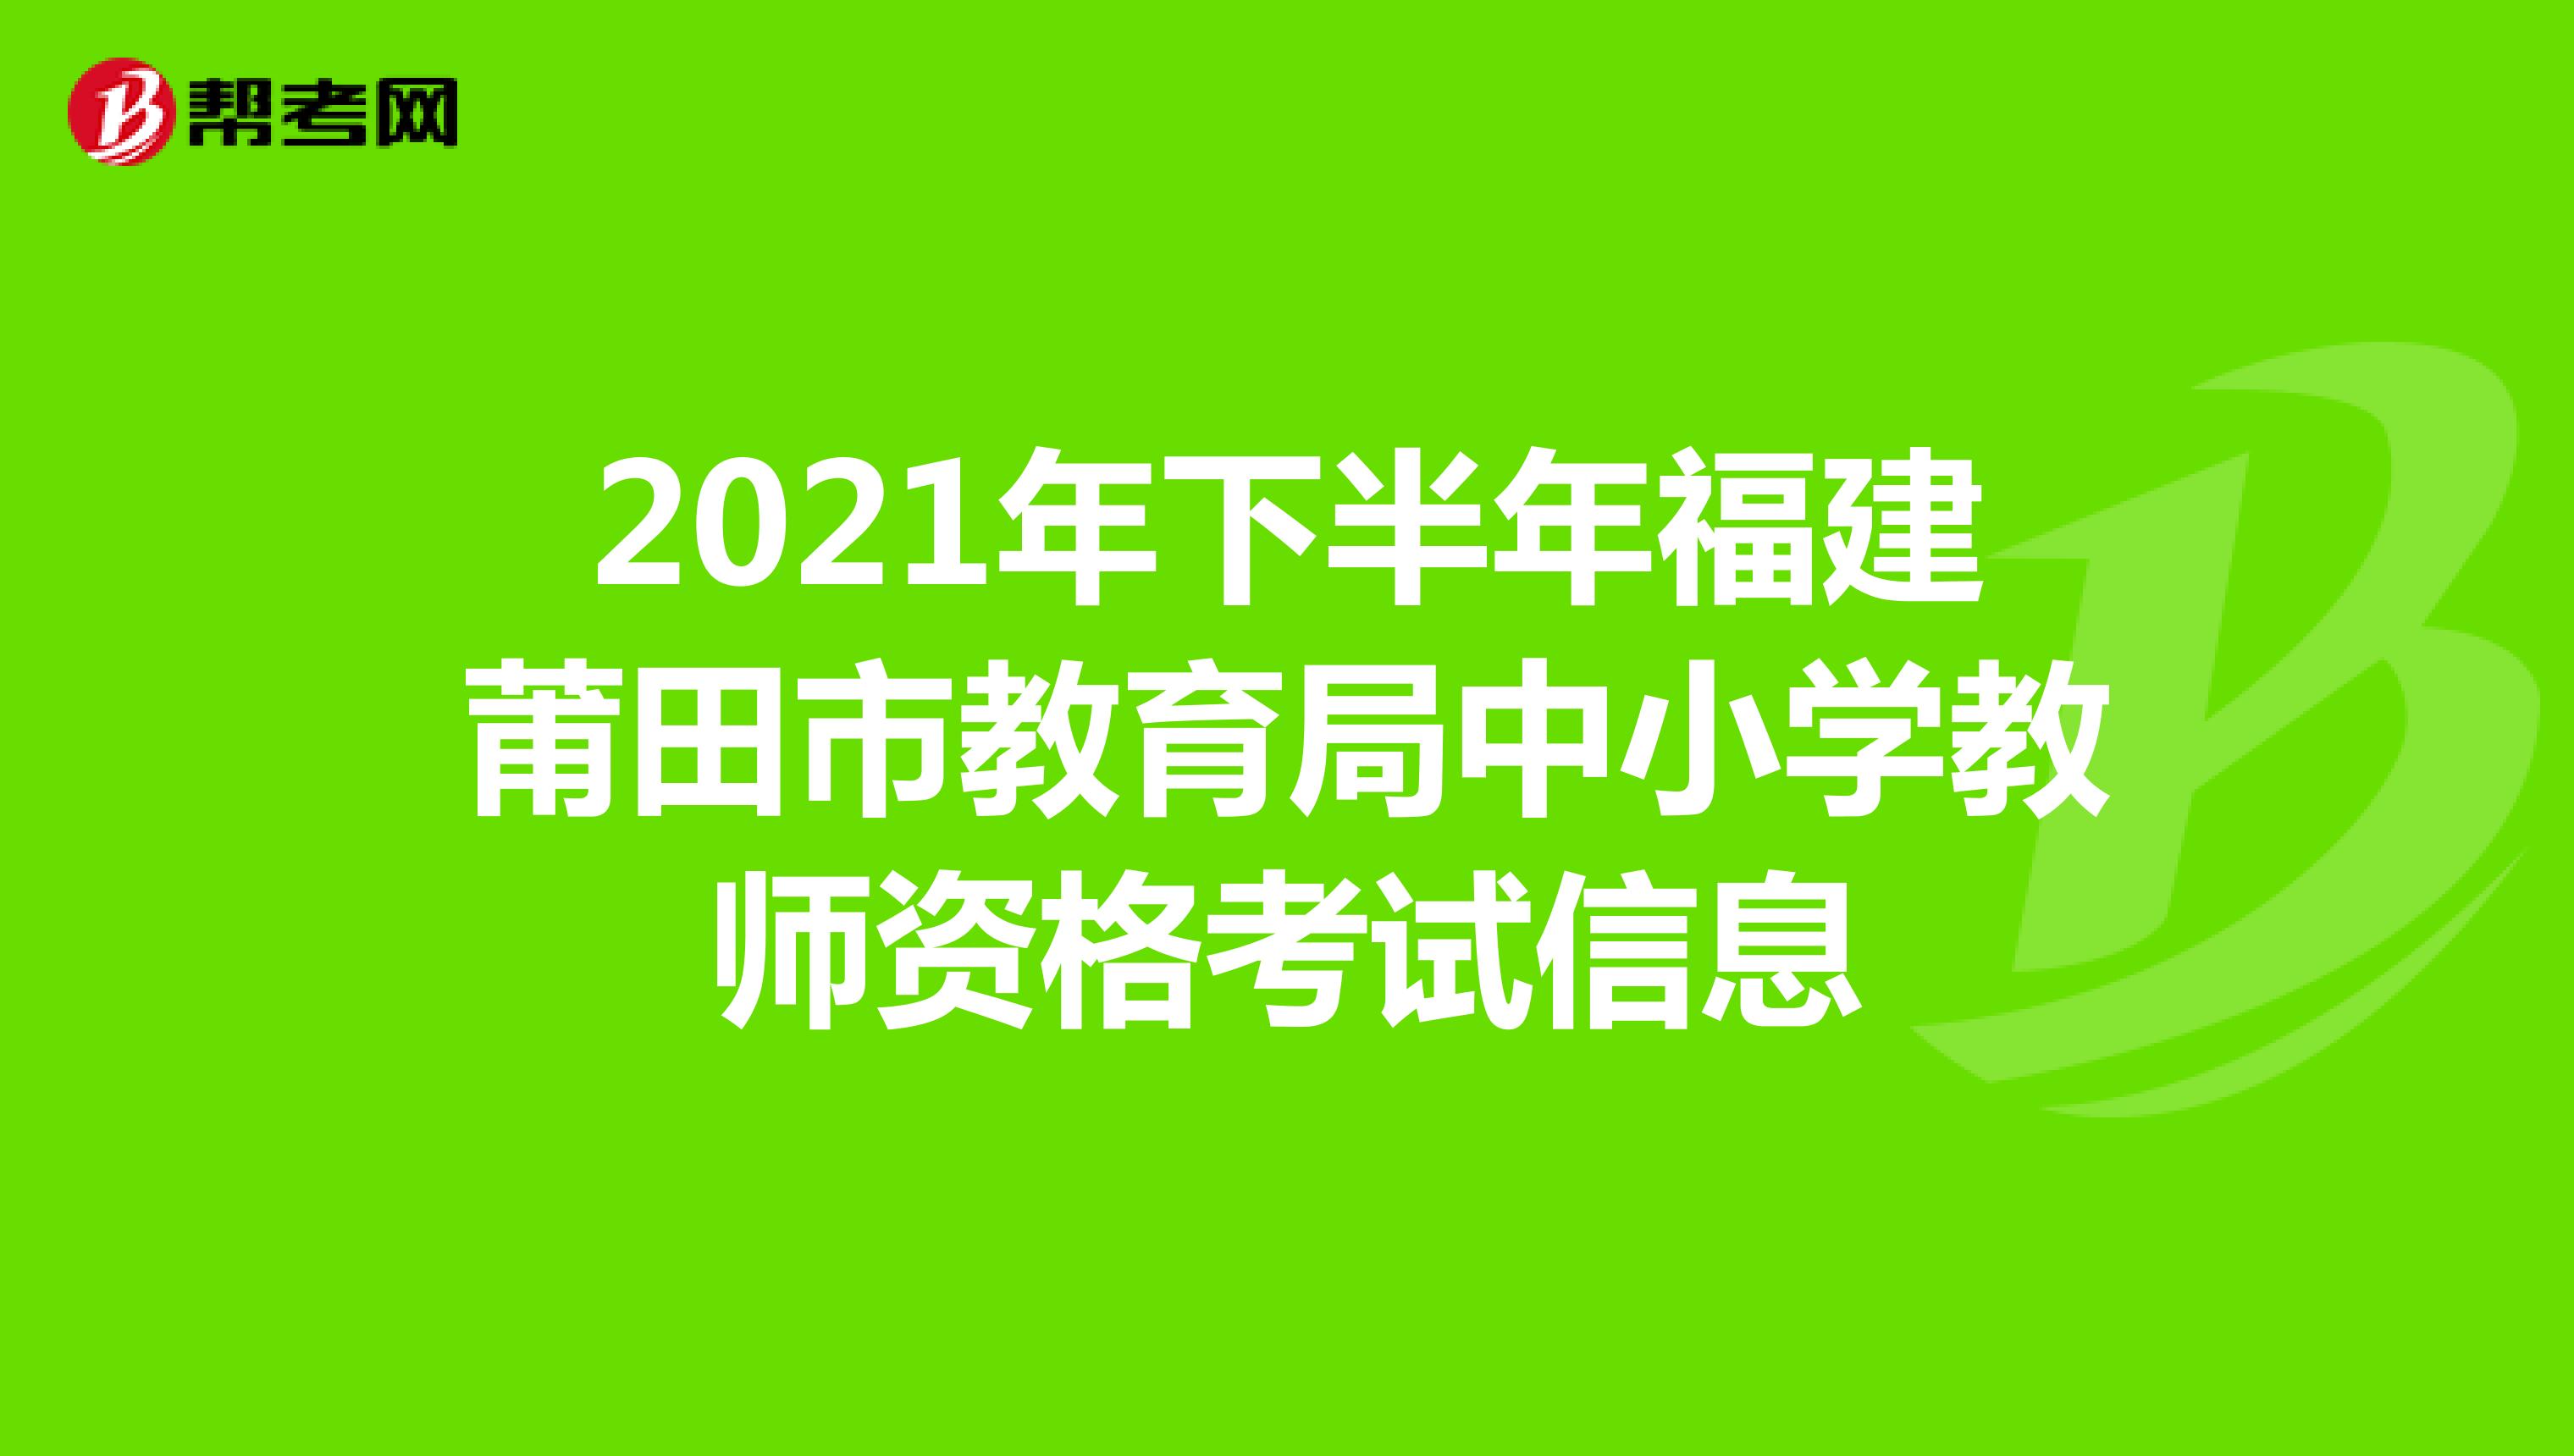 2021年下半年福建莆田市教育局中小学教师资格考试信息